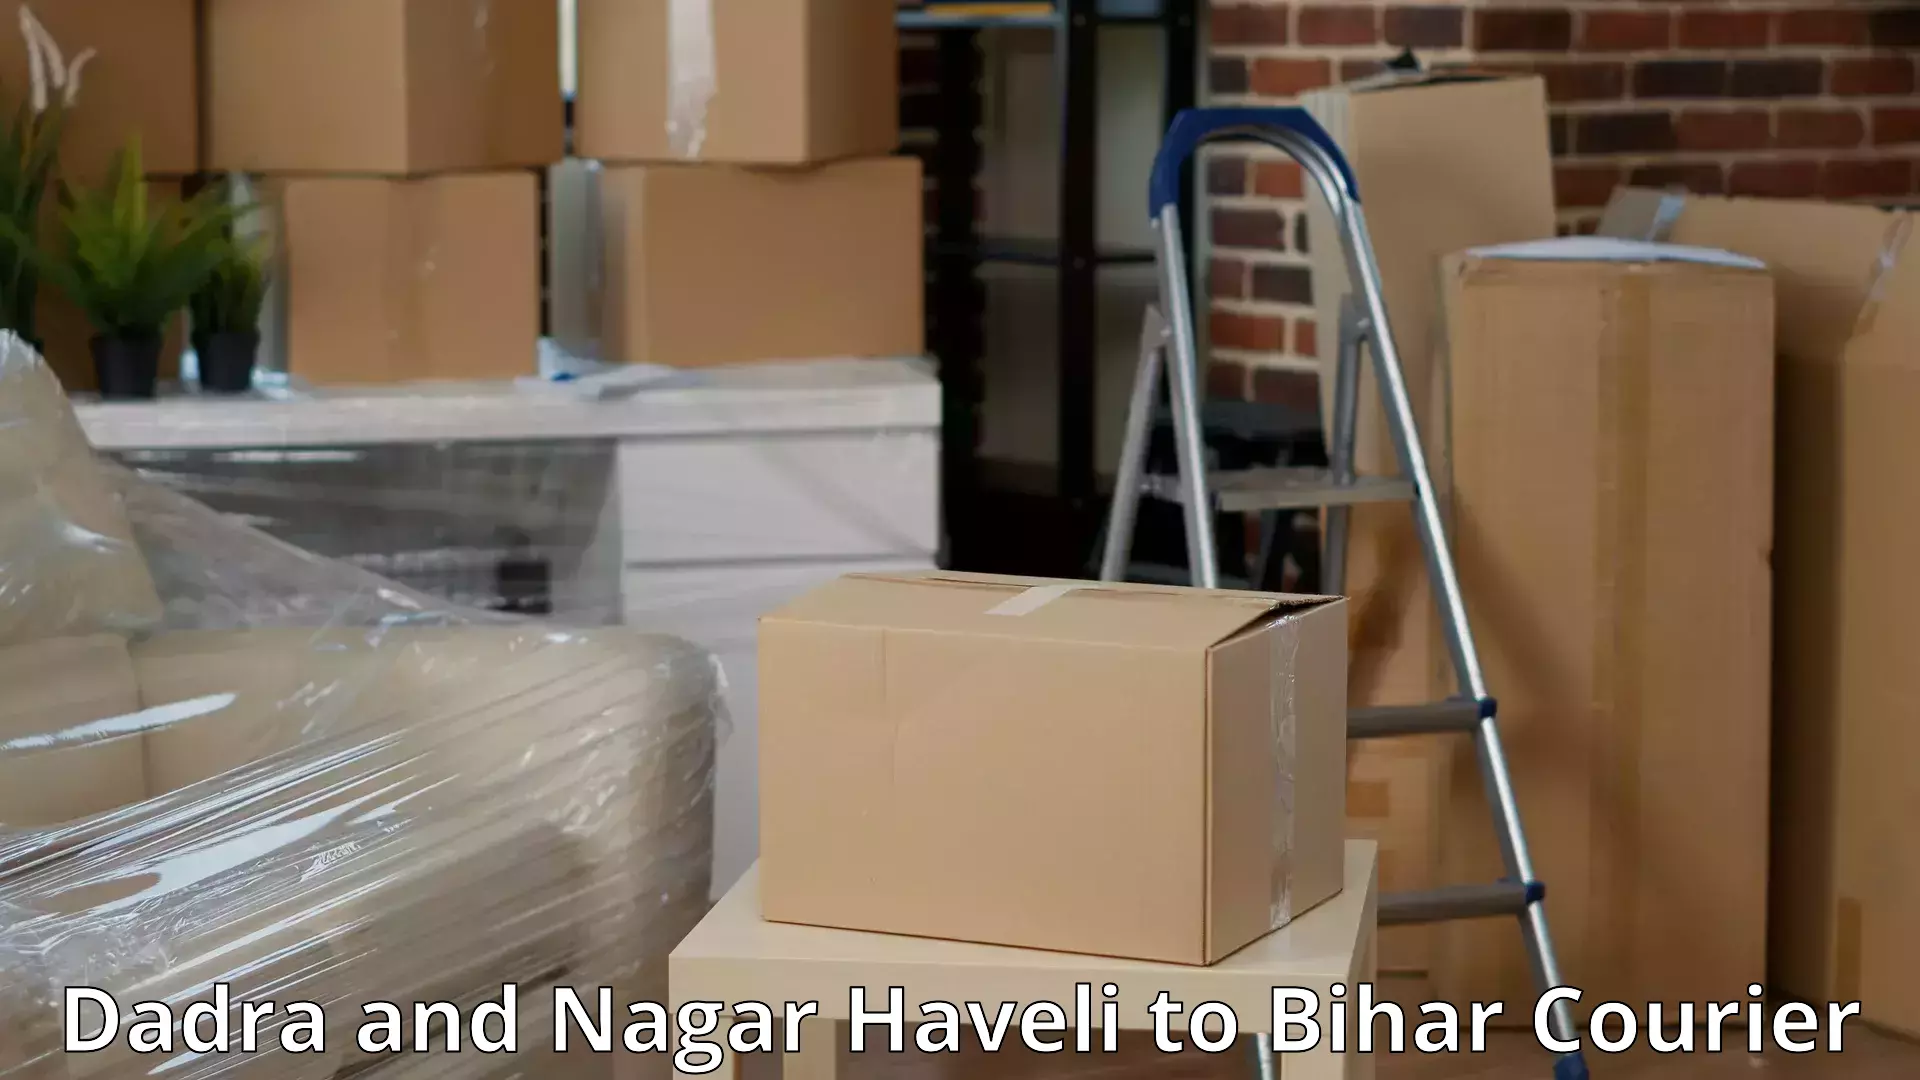 Household goods transporters Dadra and Nagar Haveli to Dholi Moraul